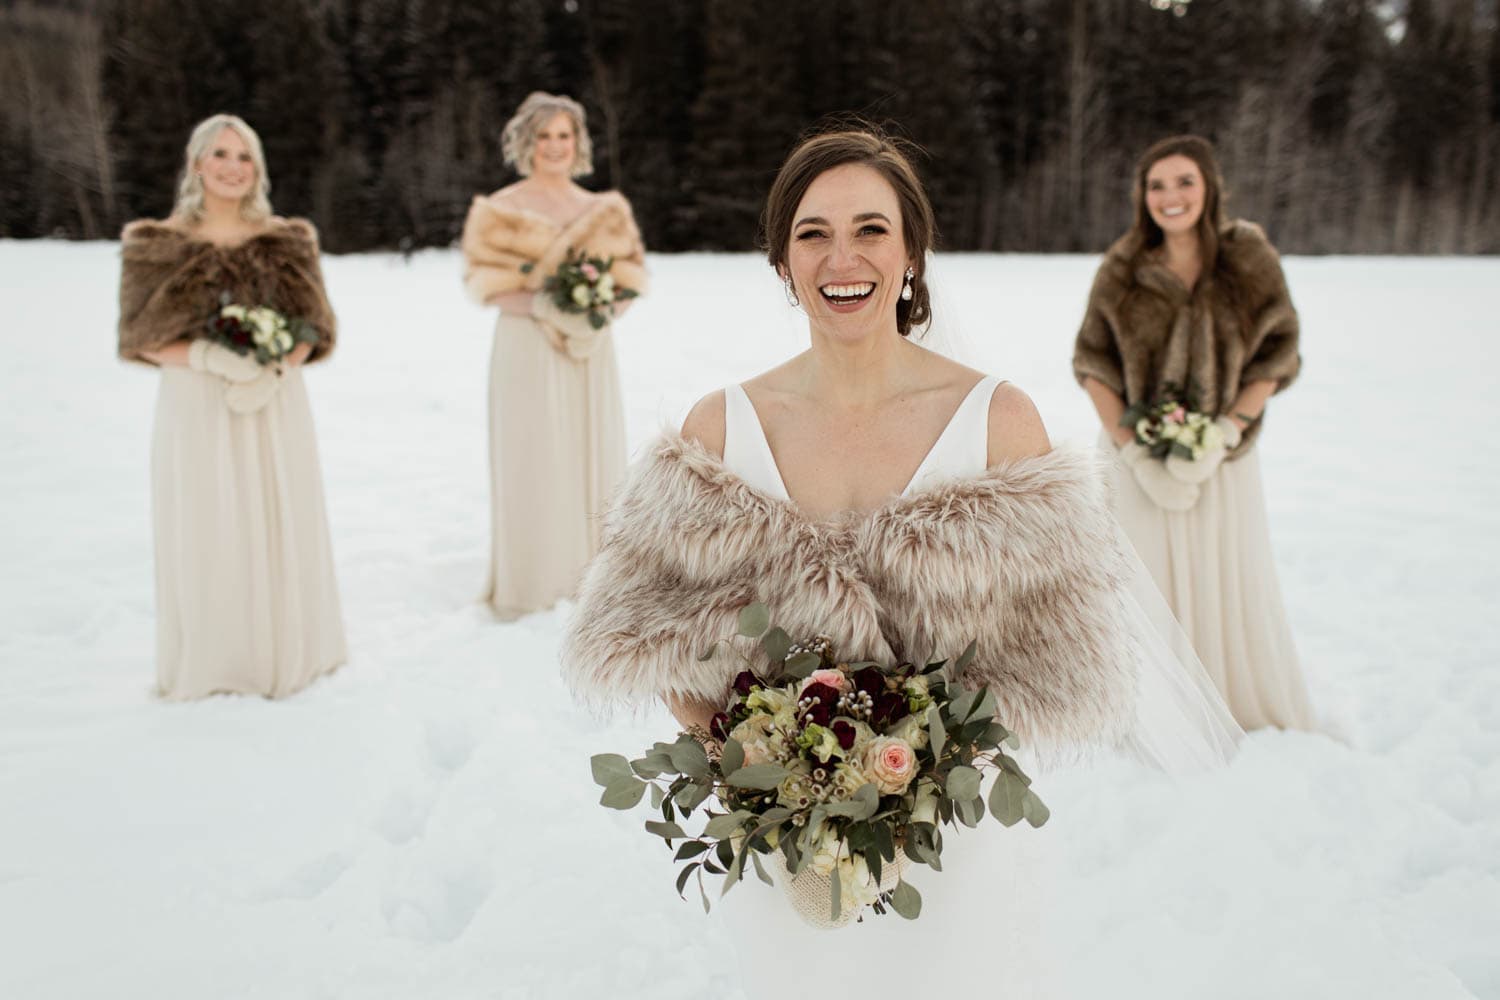 Winter Bridesmaids Photos